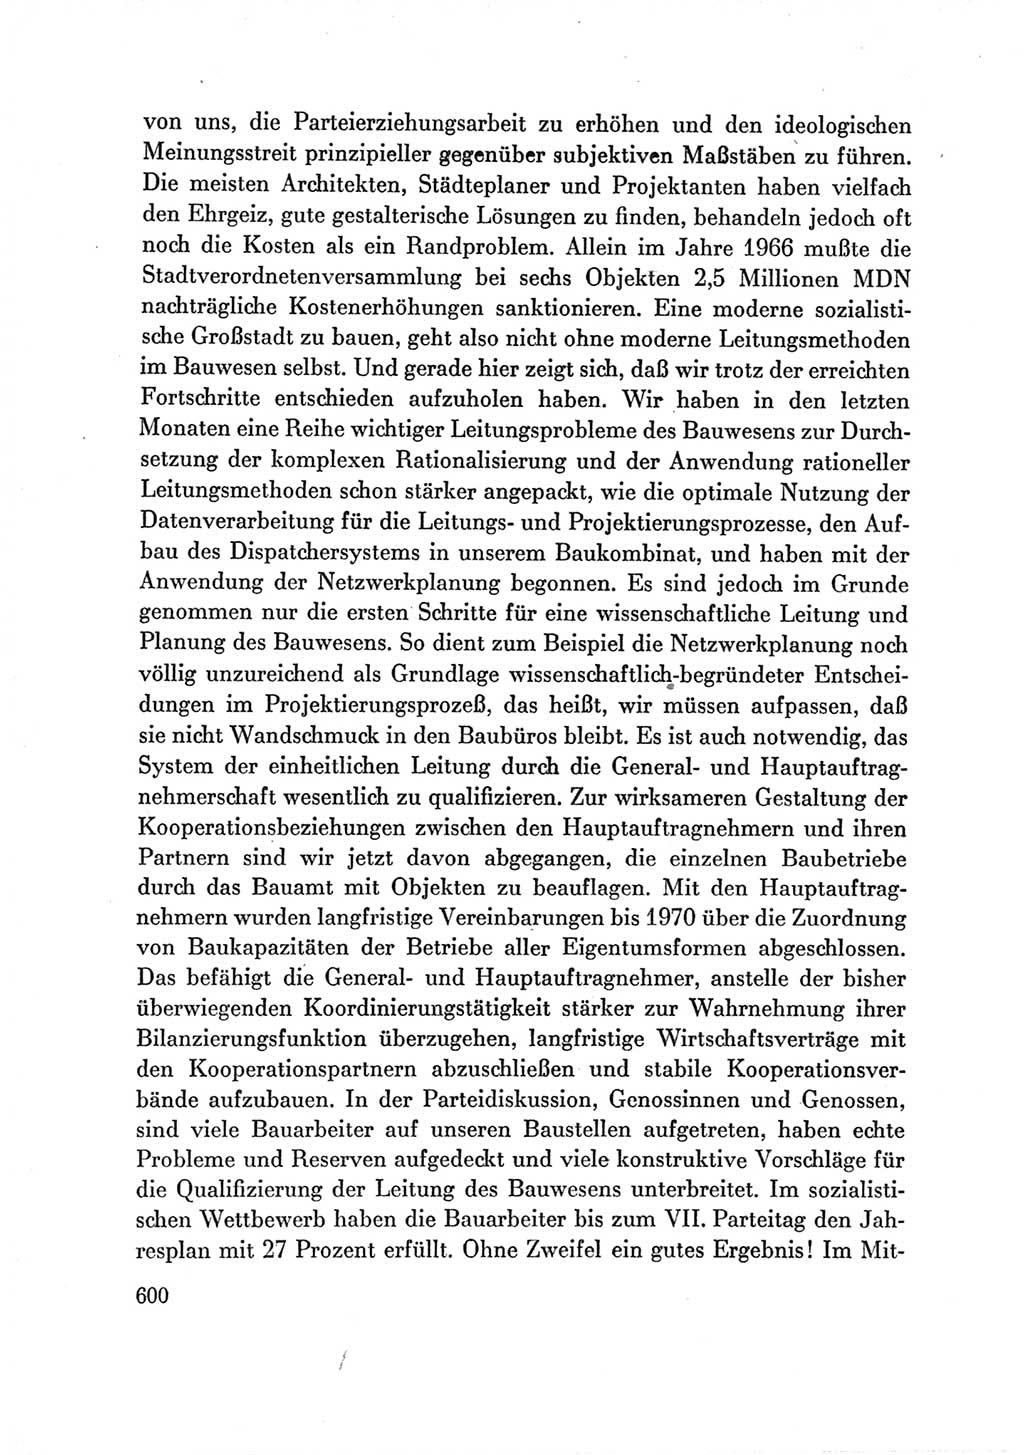 Protokoll der Verhandlungen des Ⅶ. Parteitages der Sozialistischen Einheitspartei Deutschlands (SED) [Deutsche Demokratische Republik (DDR)] 1967, Band Ⅲ, Seite 600 (Prot. Verh. Ⅶ. PT SED DDR 1967, Bd. Ⅲ, S. 600)